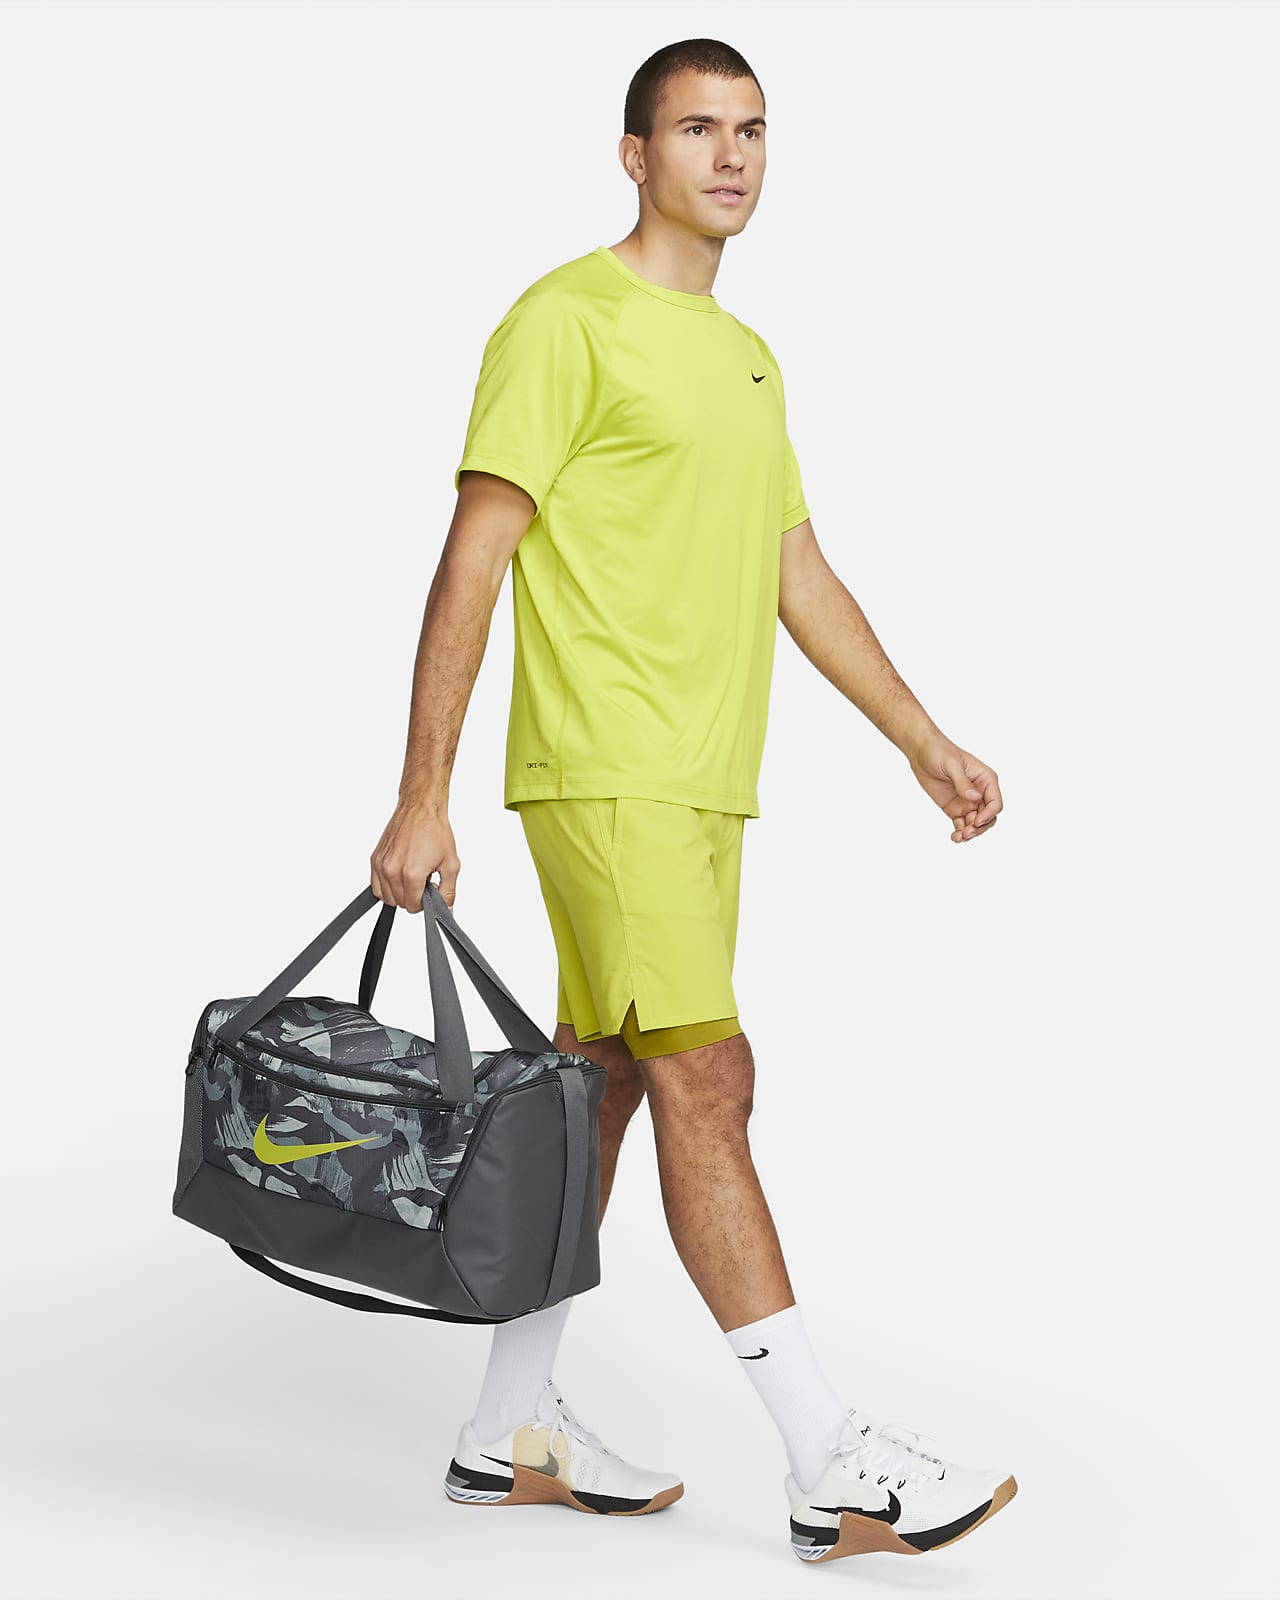 Nike Brasilia Printed Training Duffel Bag (Small), Men's Fashion